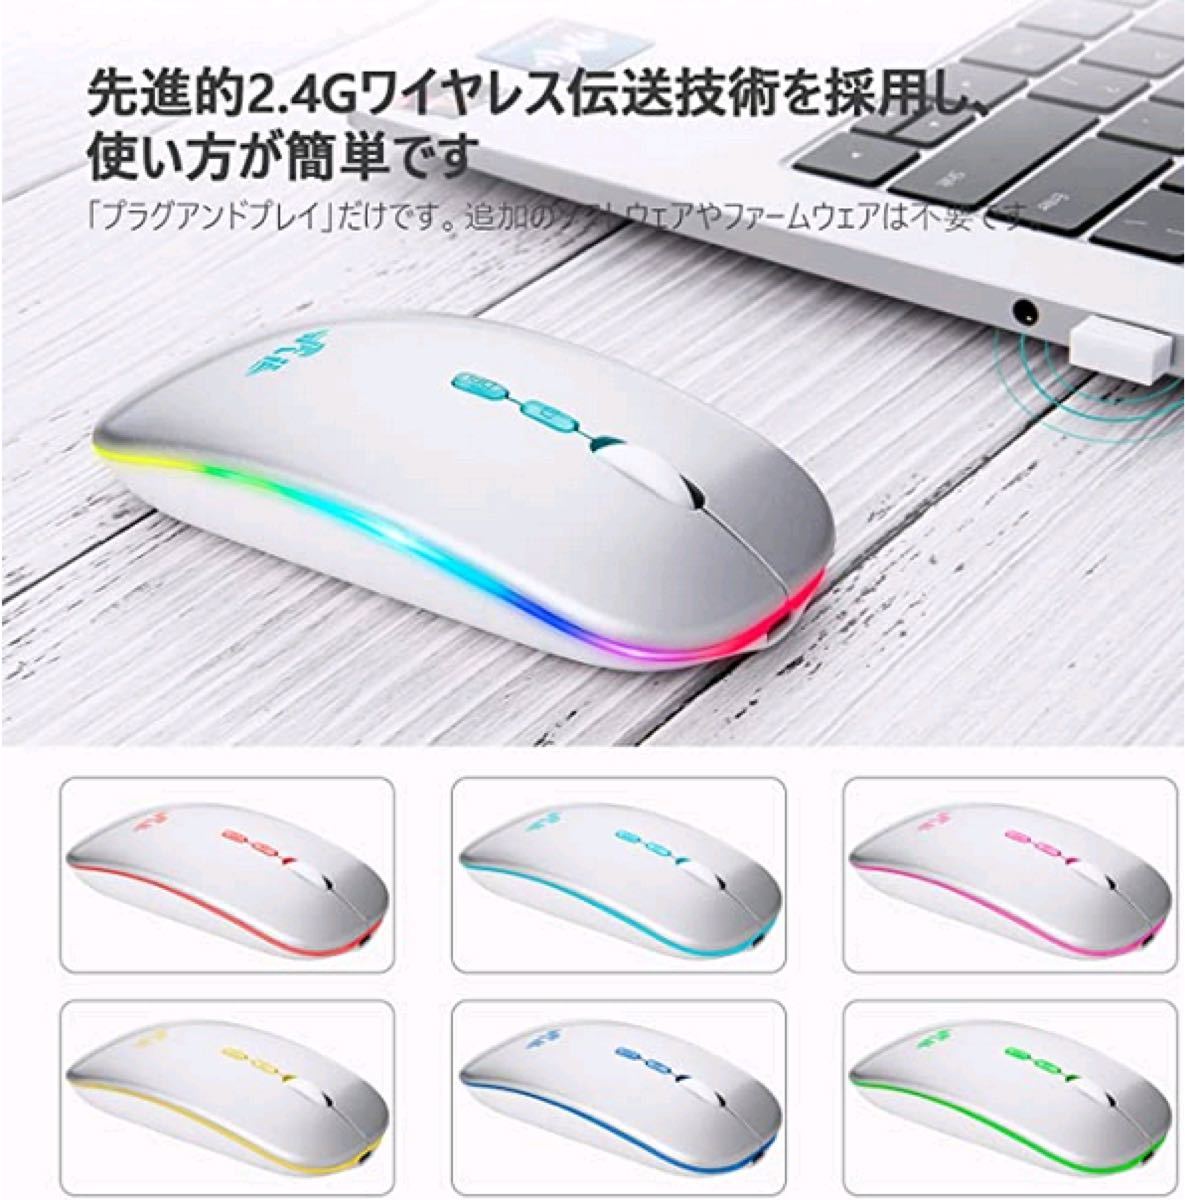 ワイヤレスマウス Bluetooth 静音 Mouse